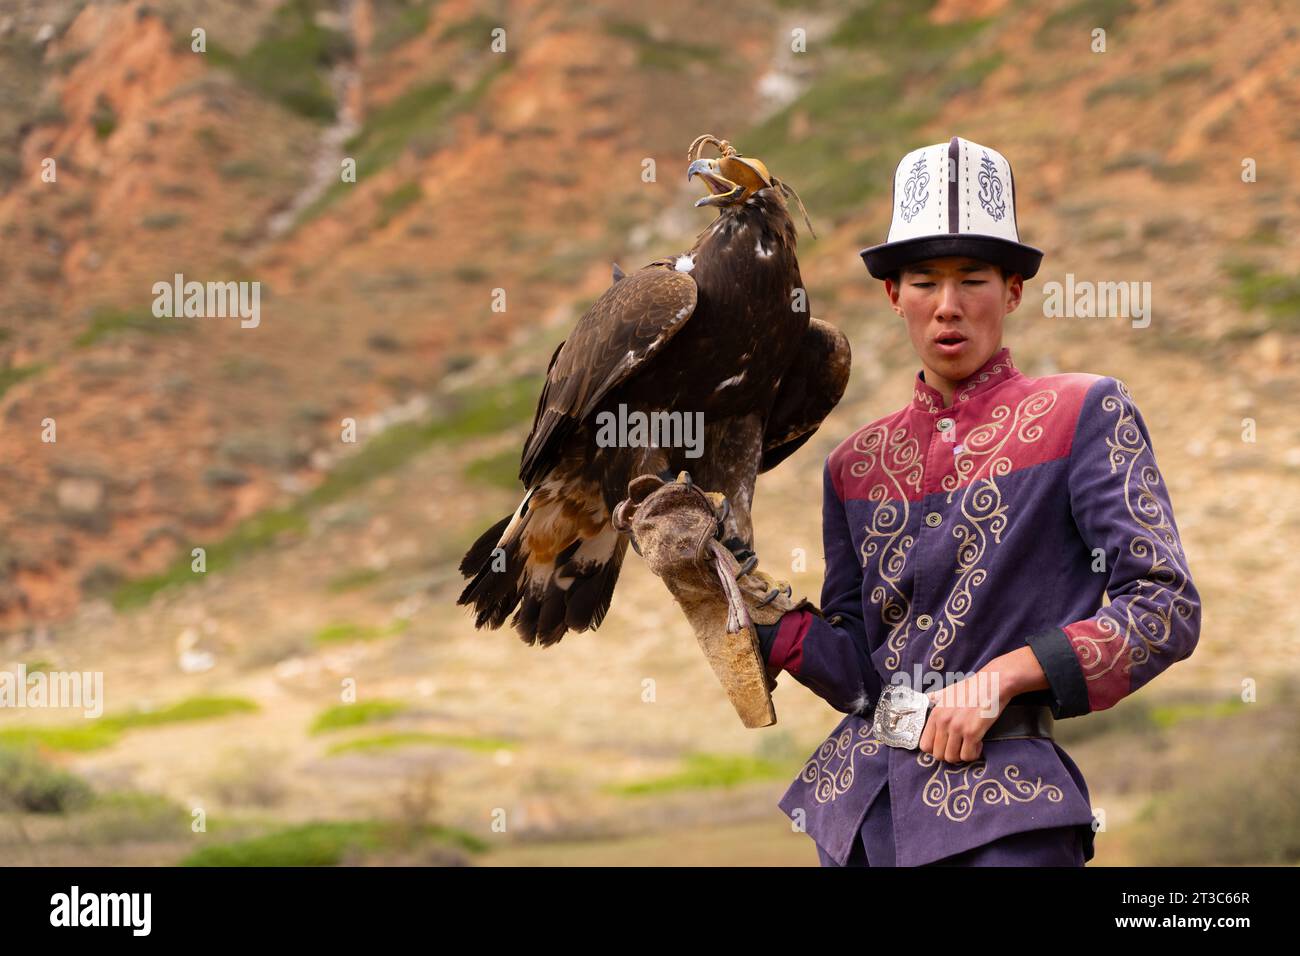 Chasseur kirghize avec aigle doré (Aquila chrysaetos), lac Song kol, région de Naryn, Kirghizistan Banque D'Images